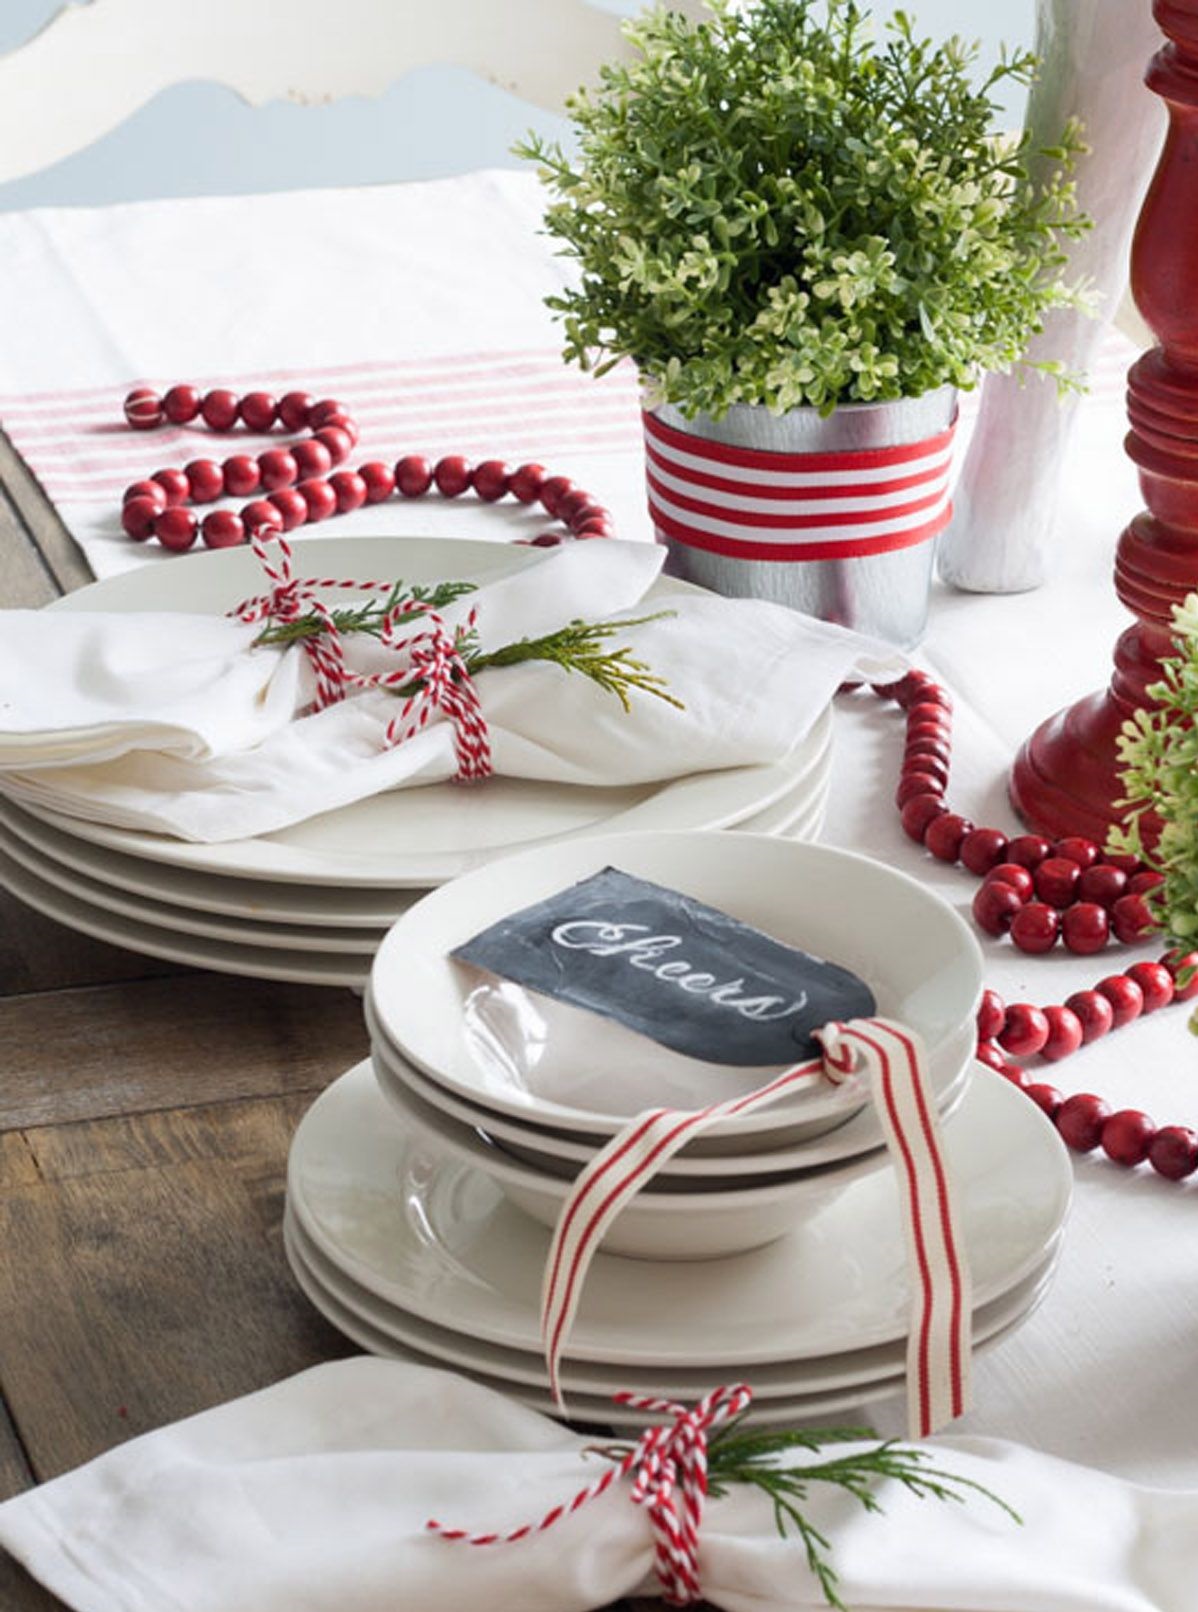 Tạo phông nền đơn giản với màu đỏ -trắng truyền thống mùa lễ hội: Dây ruy băng kẻ sọc, chuỗi hạt màu đỏ mô phỏng quả nam việt quất và sợi dây nhỏ buộc khăn ăn.